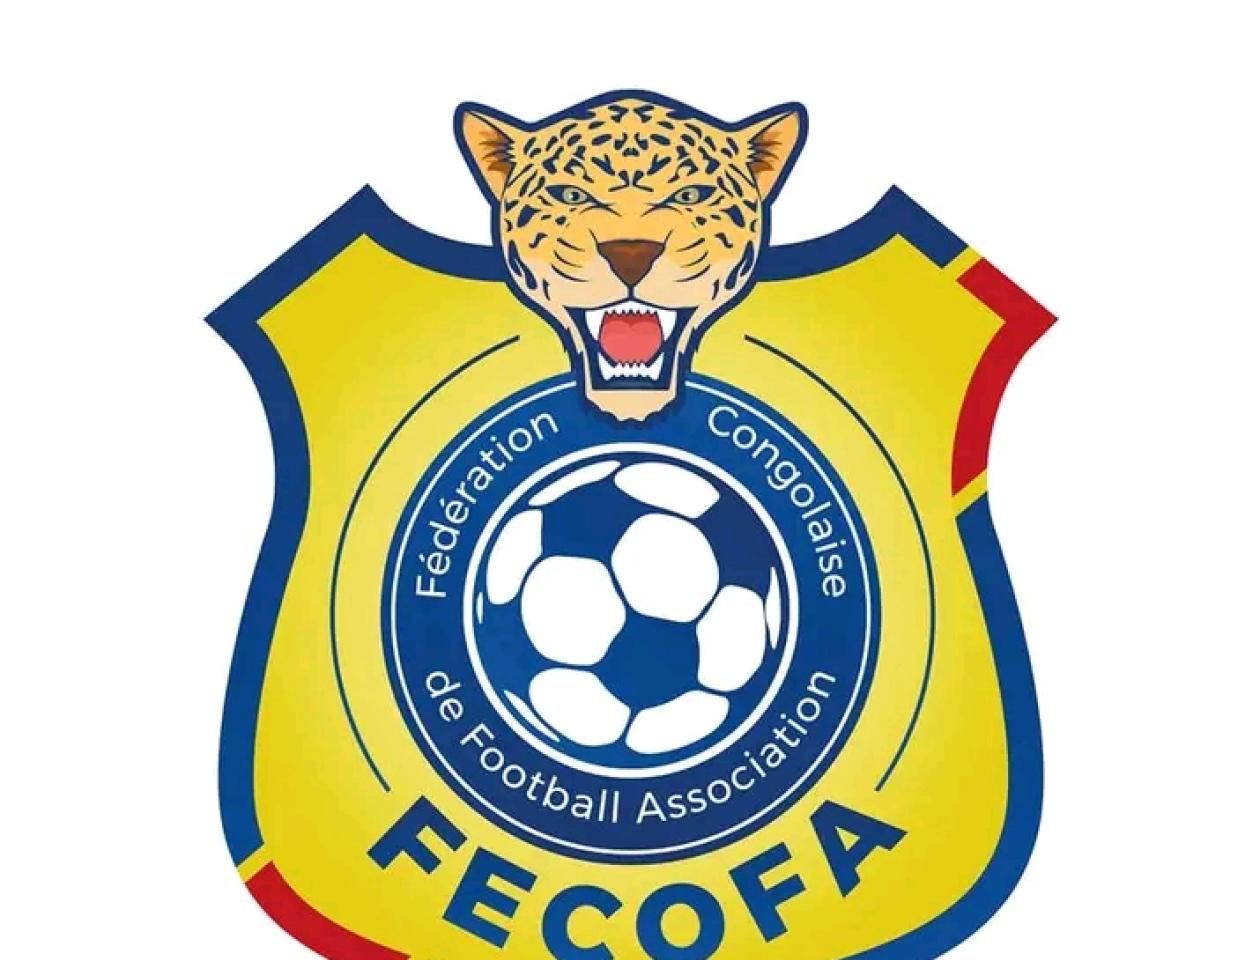 Logo de la Fédération congolaise de football Association. 